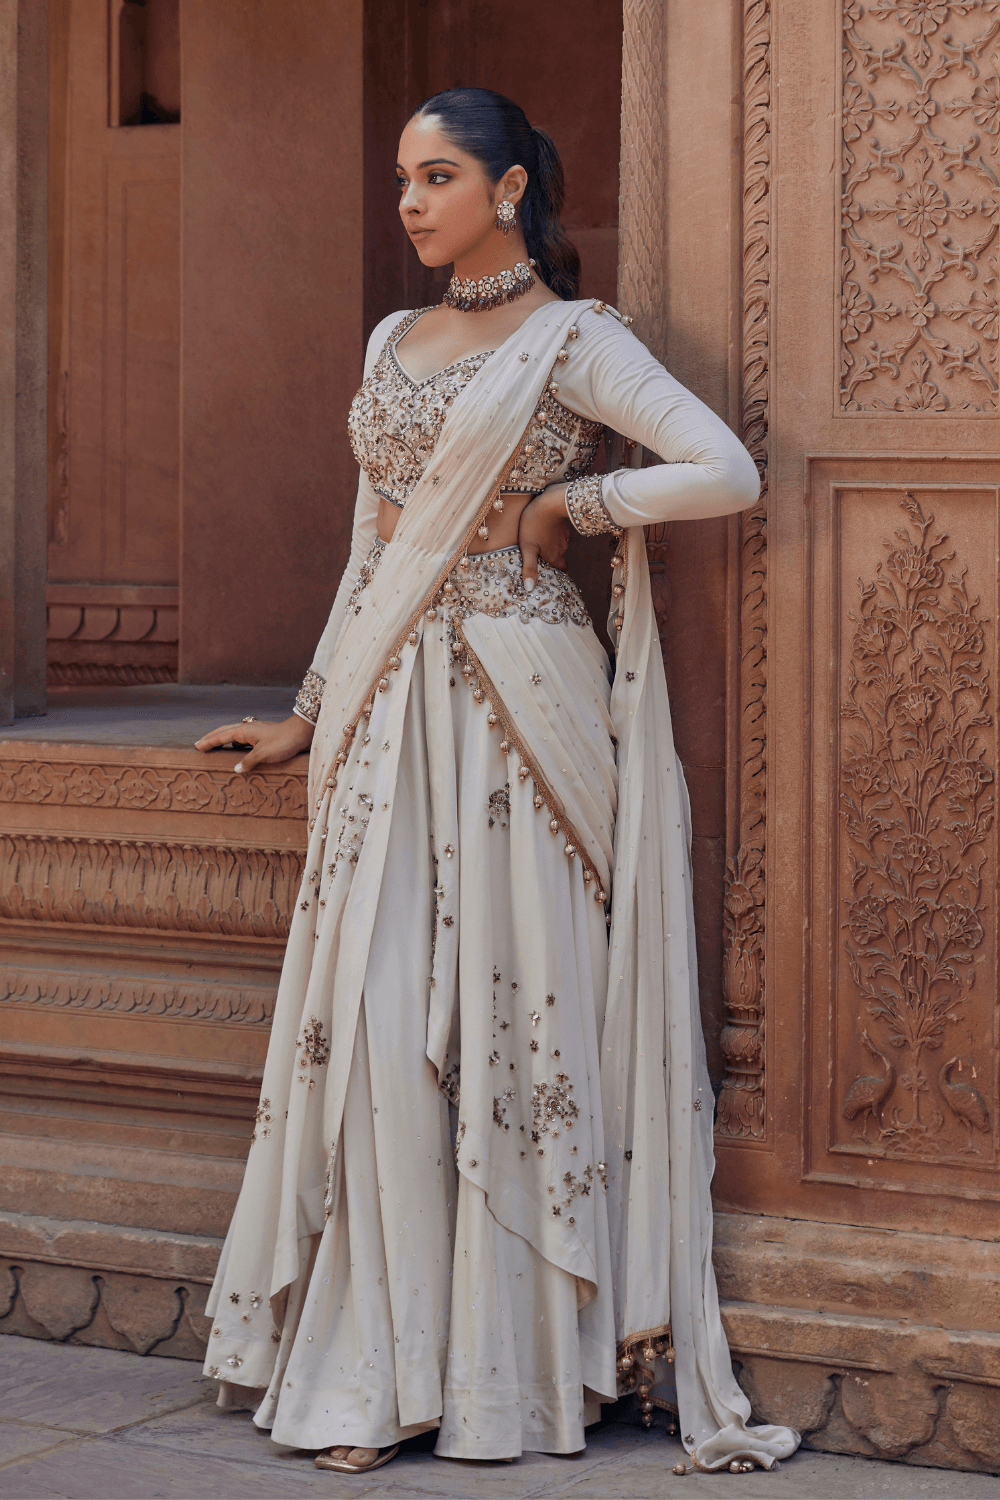 Pink Bridal Lehenga Blouse With Full Sleeves Indian Designer Wedding Dress  - Etsy